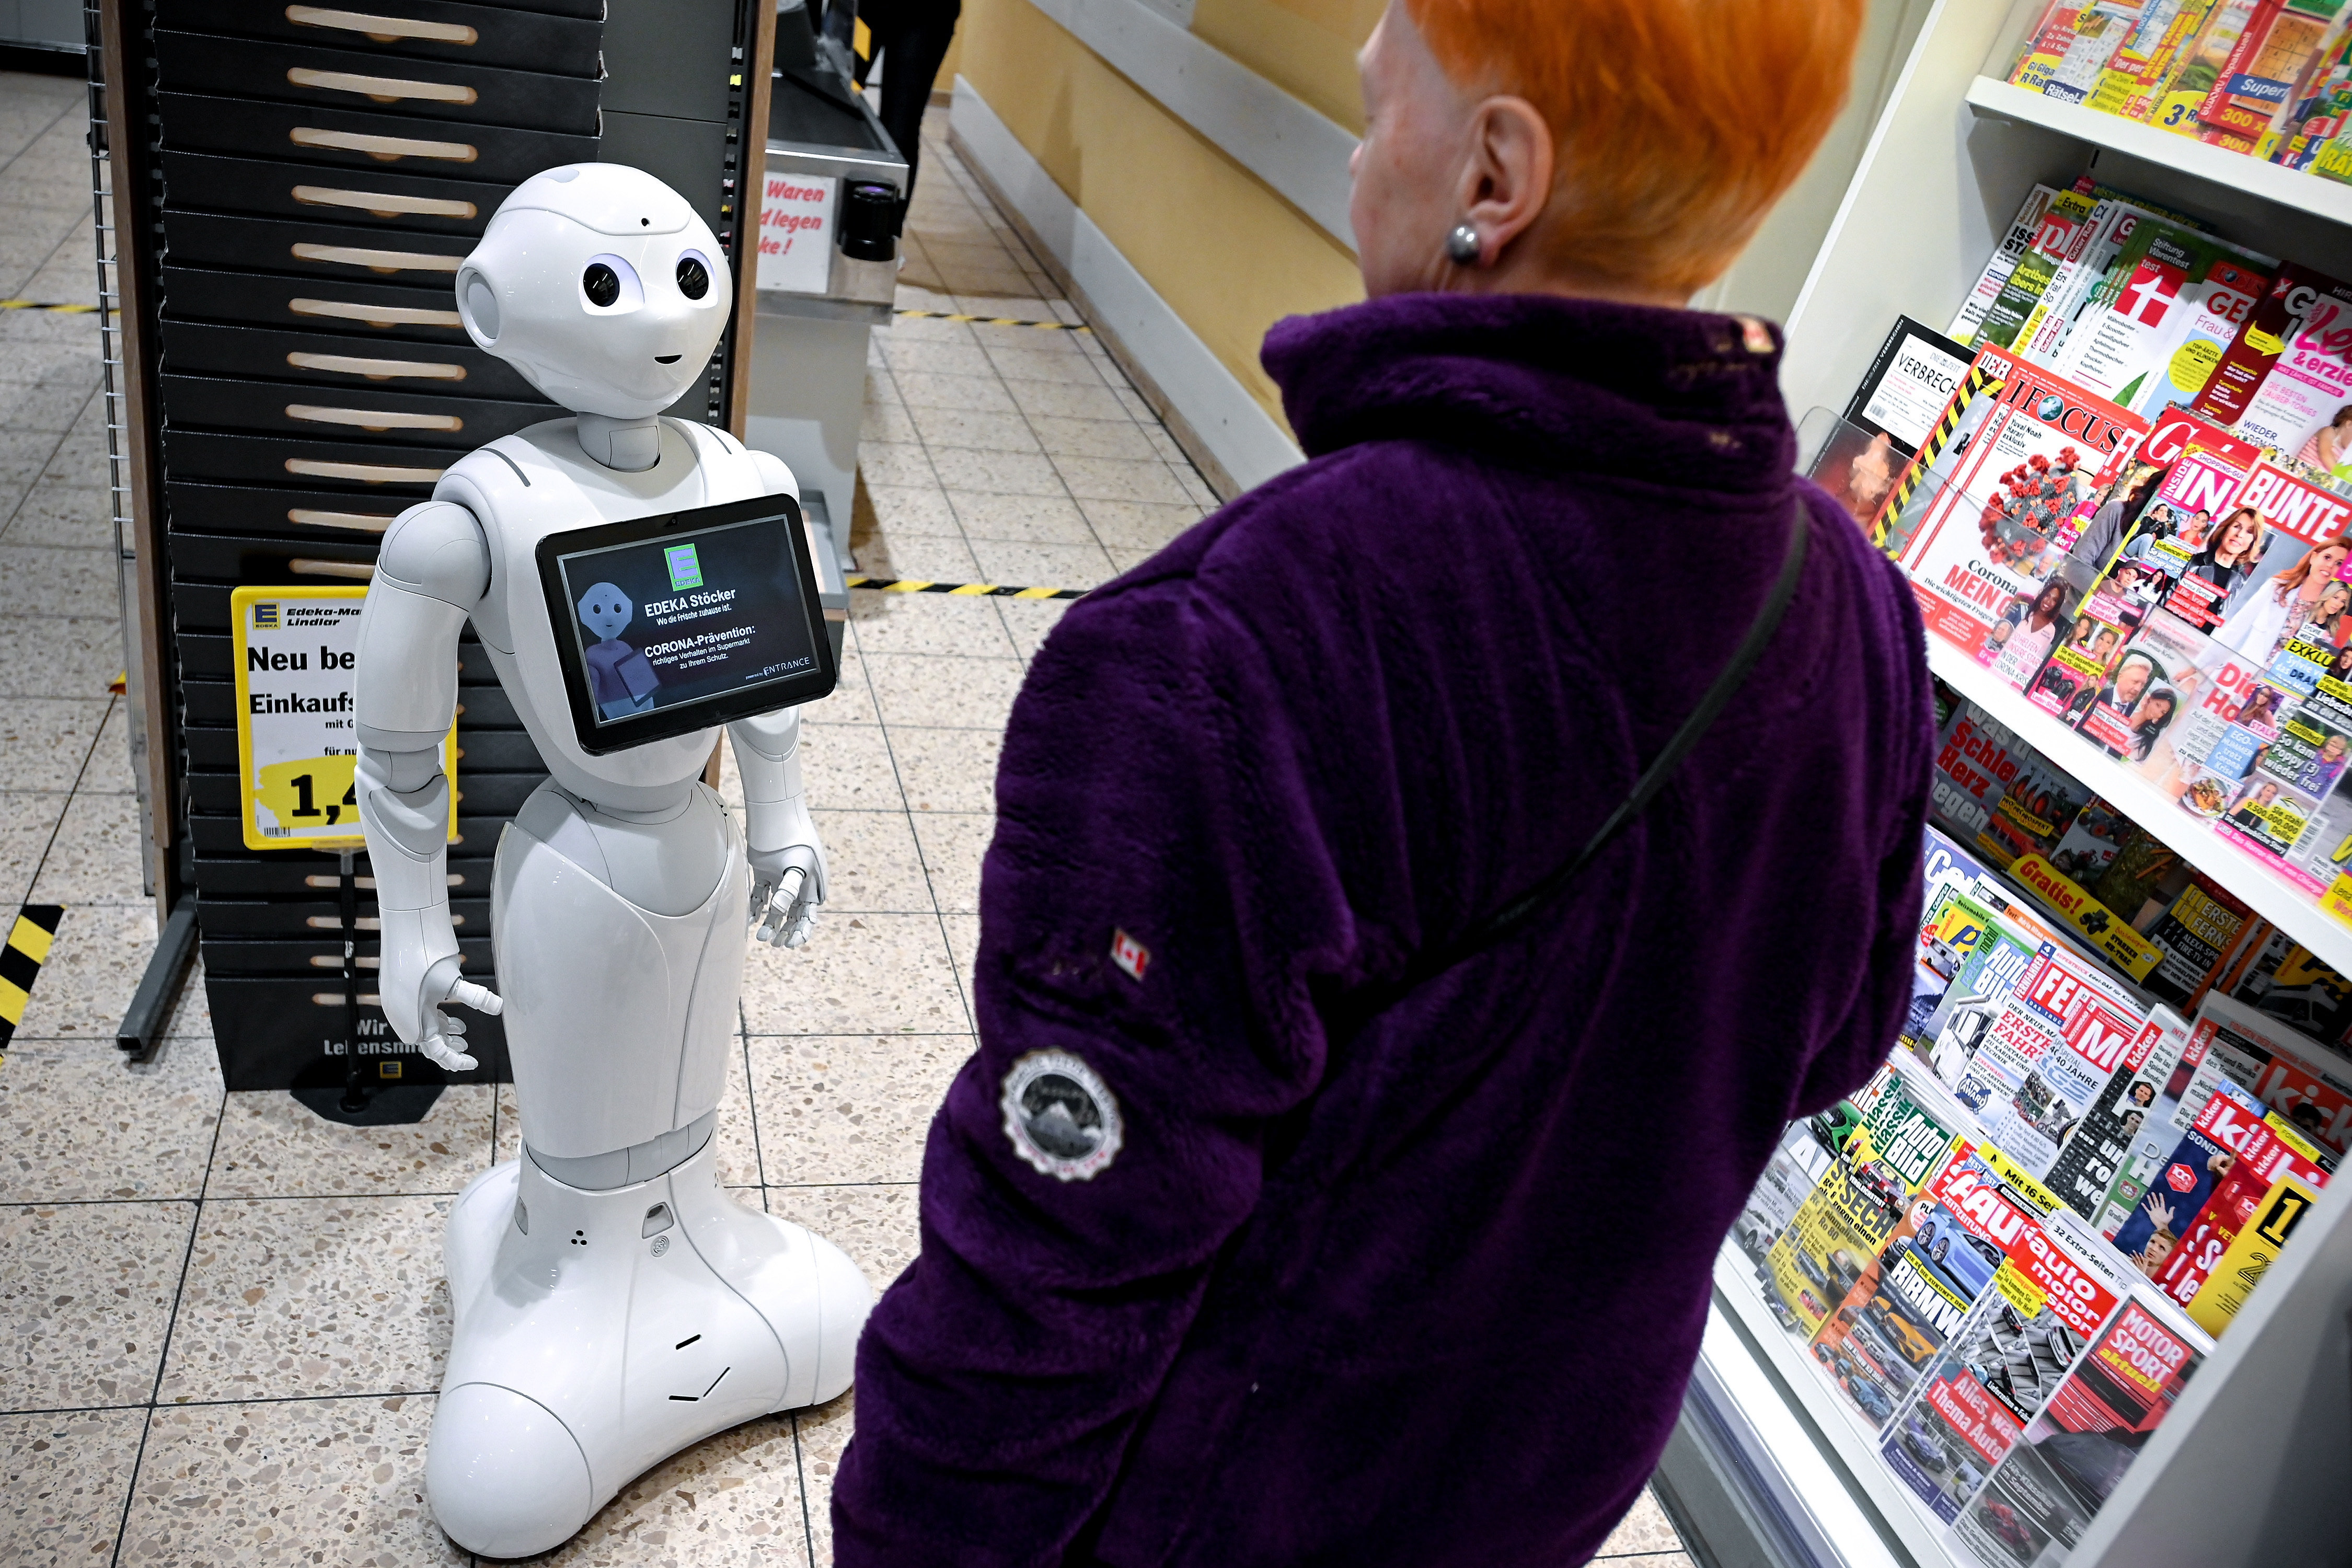 Így segíti ember alakú robot az eladók munkáját Németországban - FOTÓK! -  Blikk